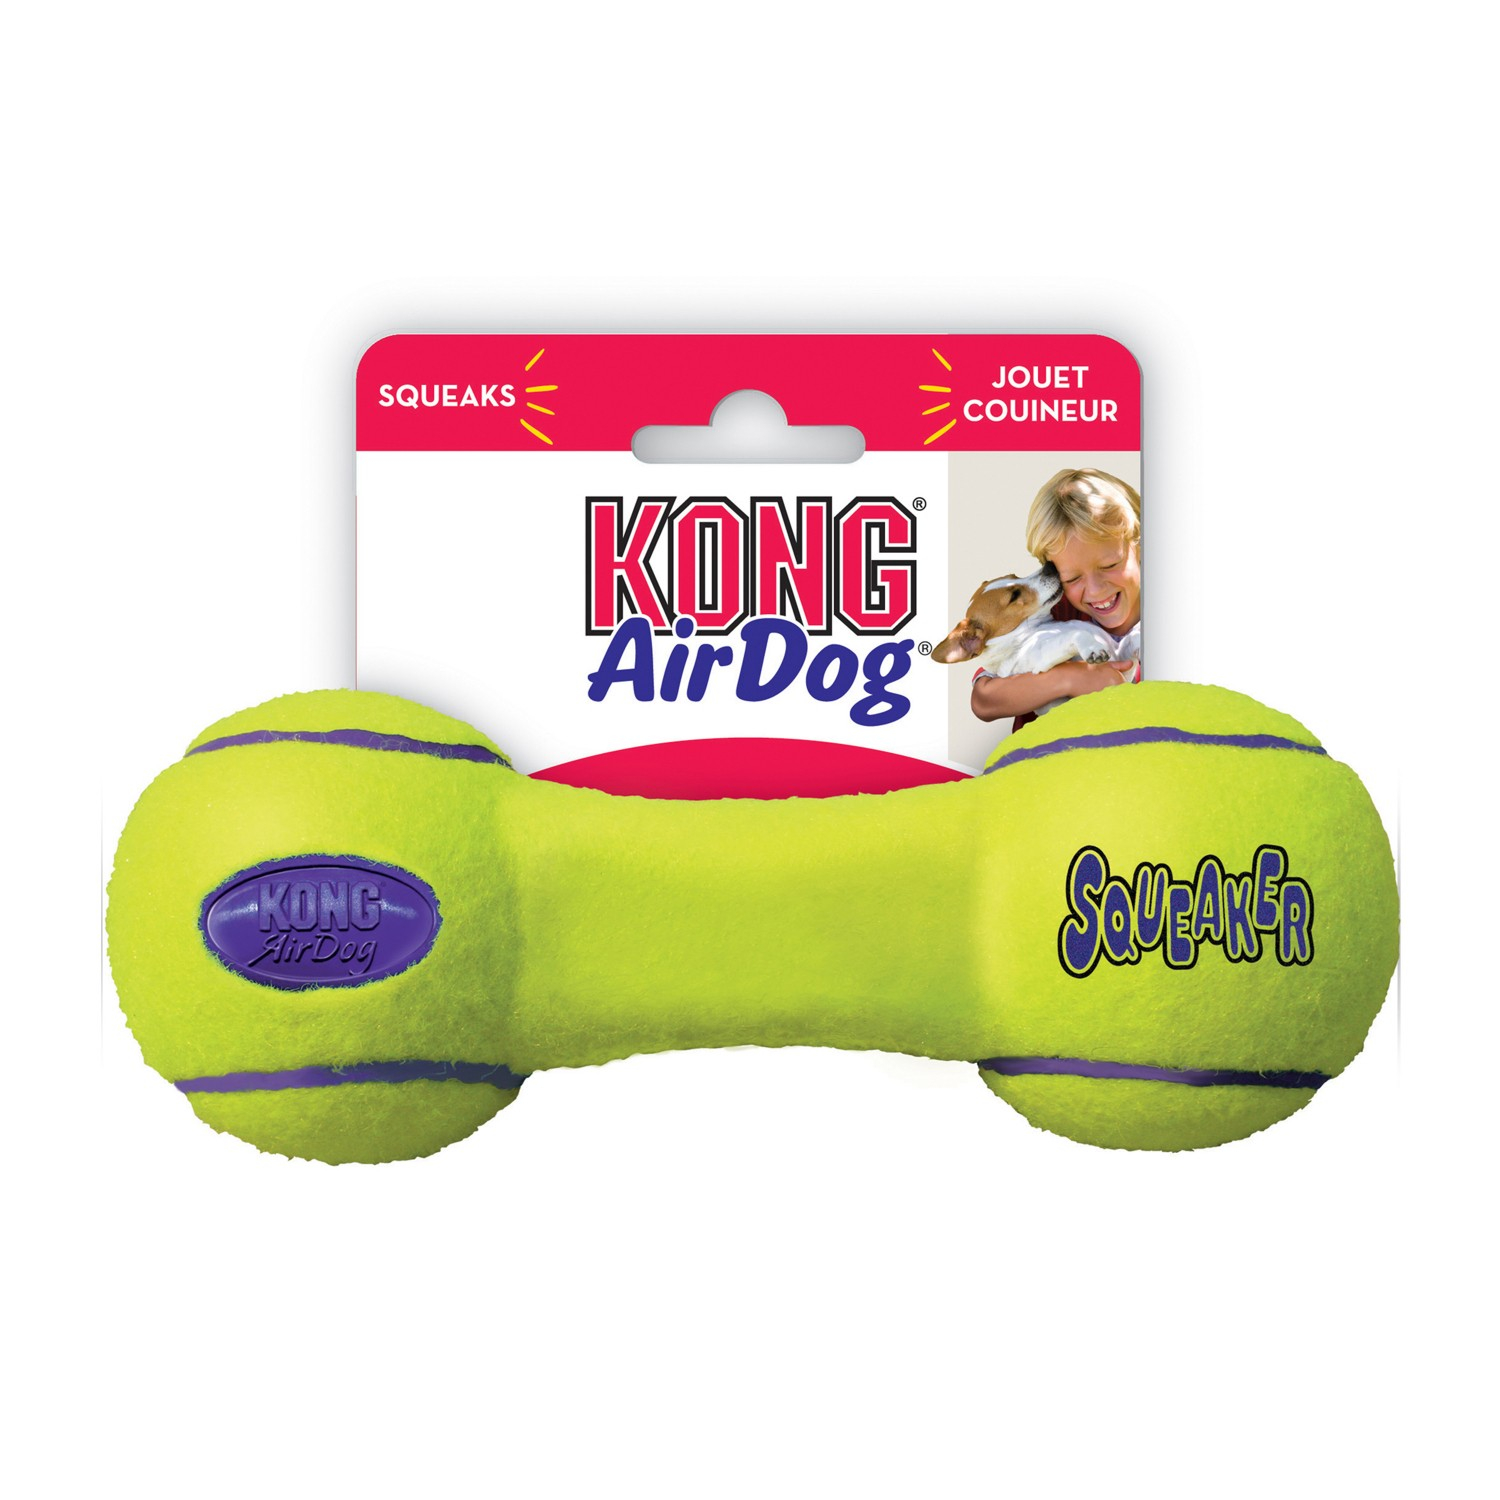 KONG Squeaker Dumbbell 3 tamanhos - brinquedo para cães de todos os tamanhos - saltitante e sonoro